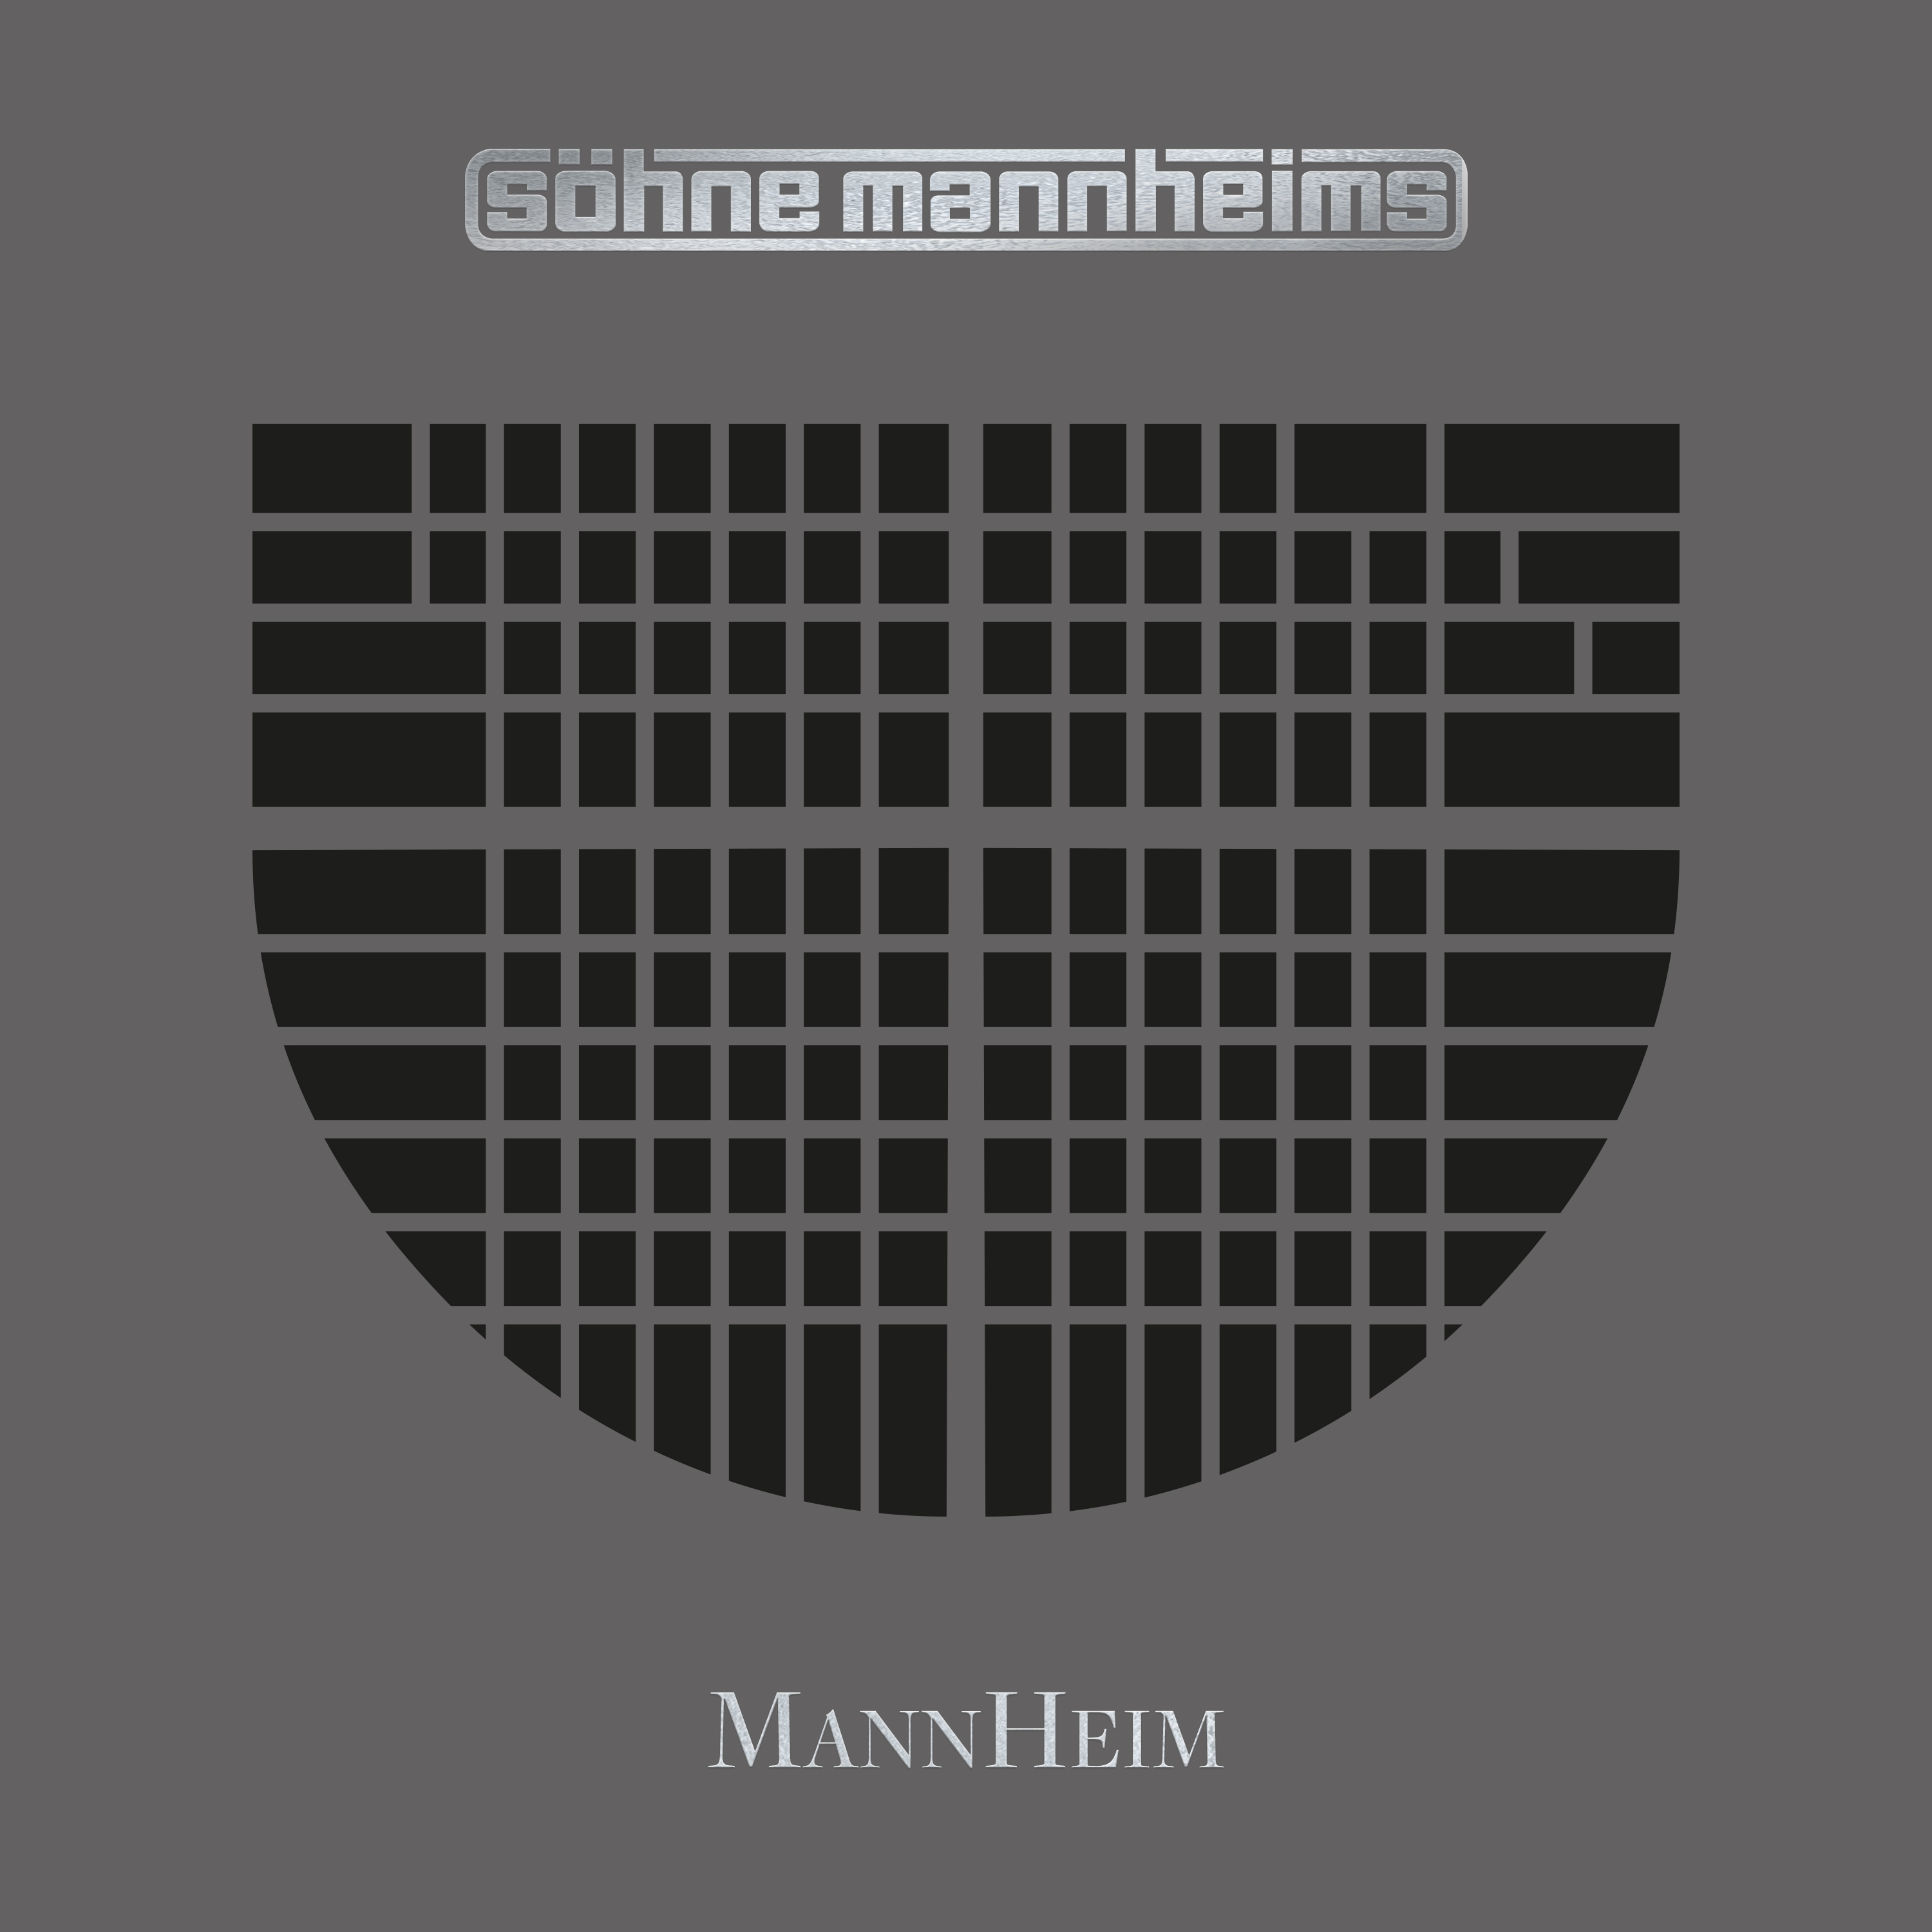 Söhne Mannheims - Mannheim